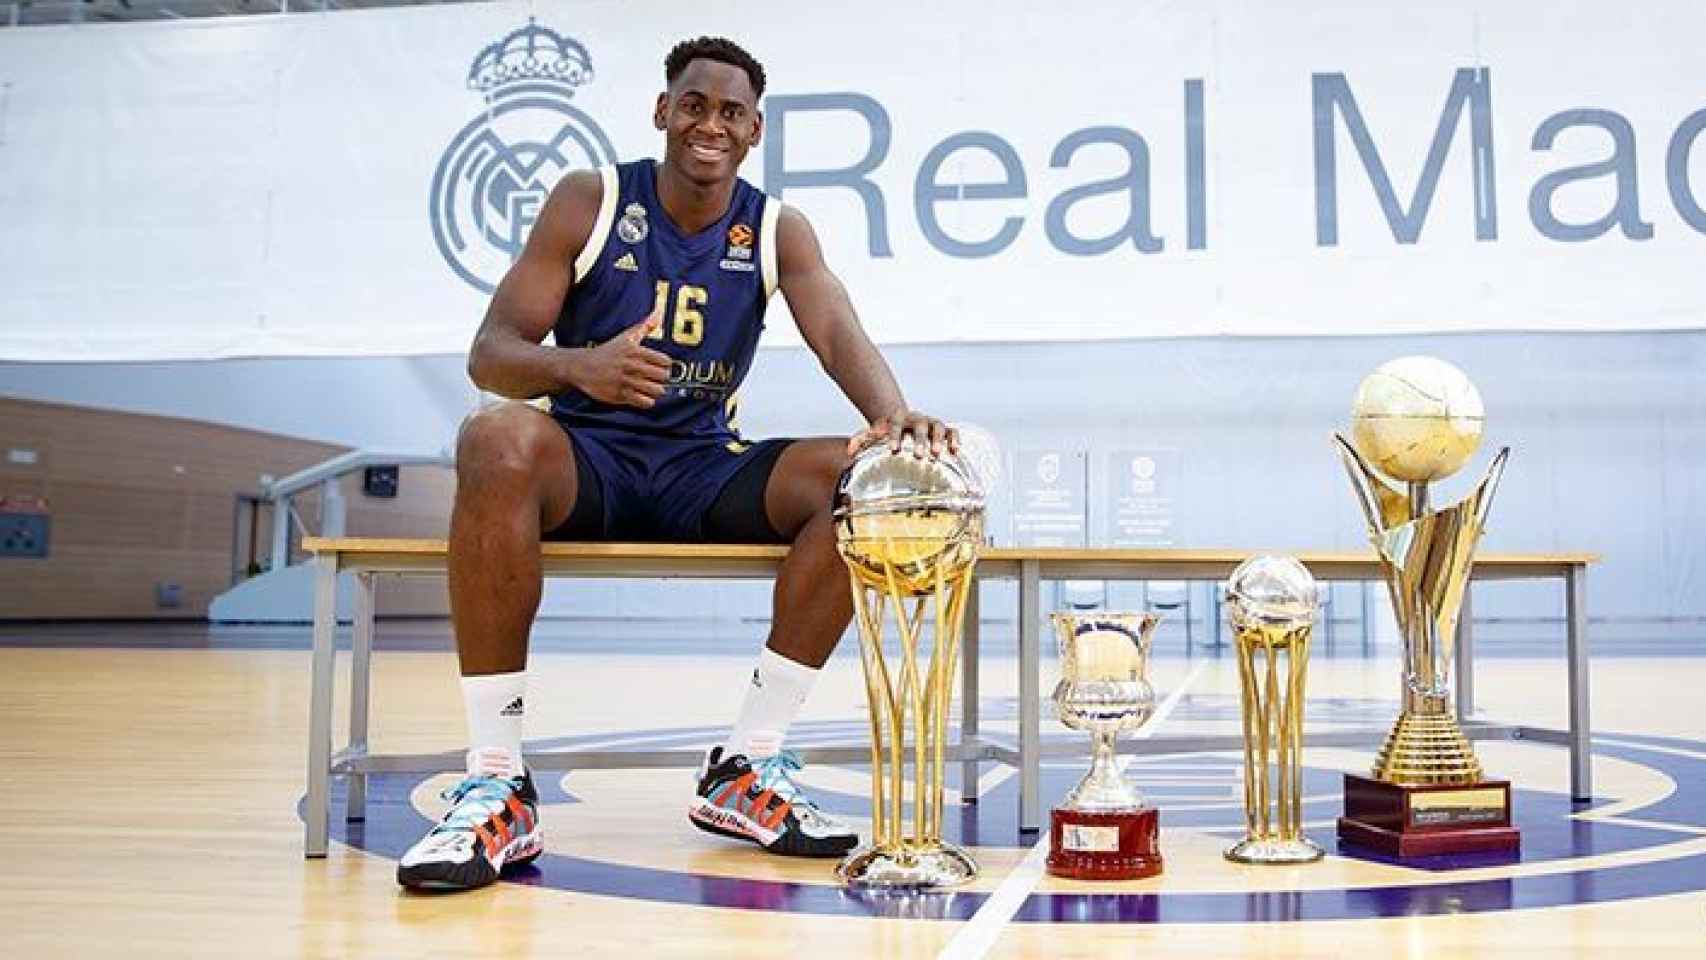 Usman Garuba, jugador del Real Madrid de baloncesto